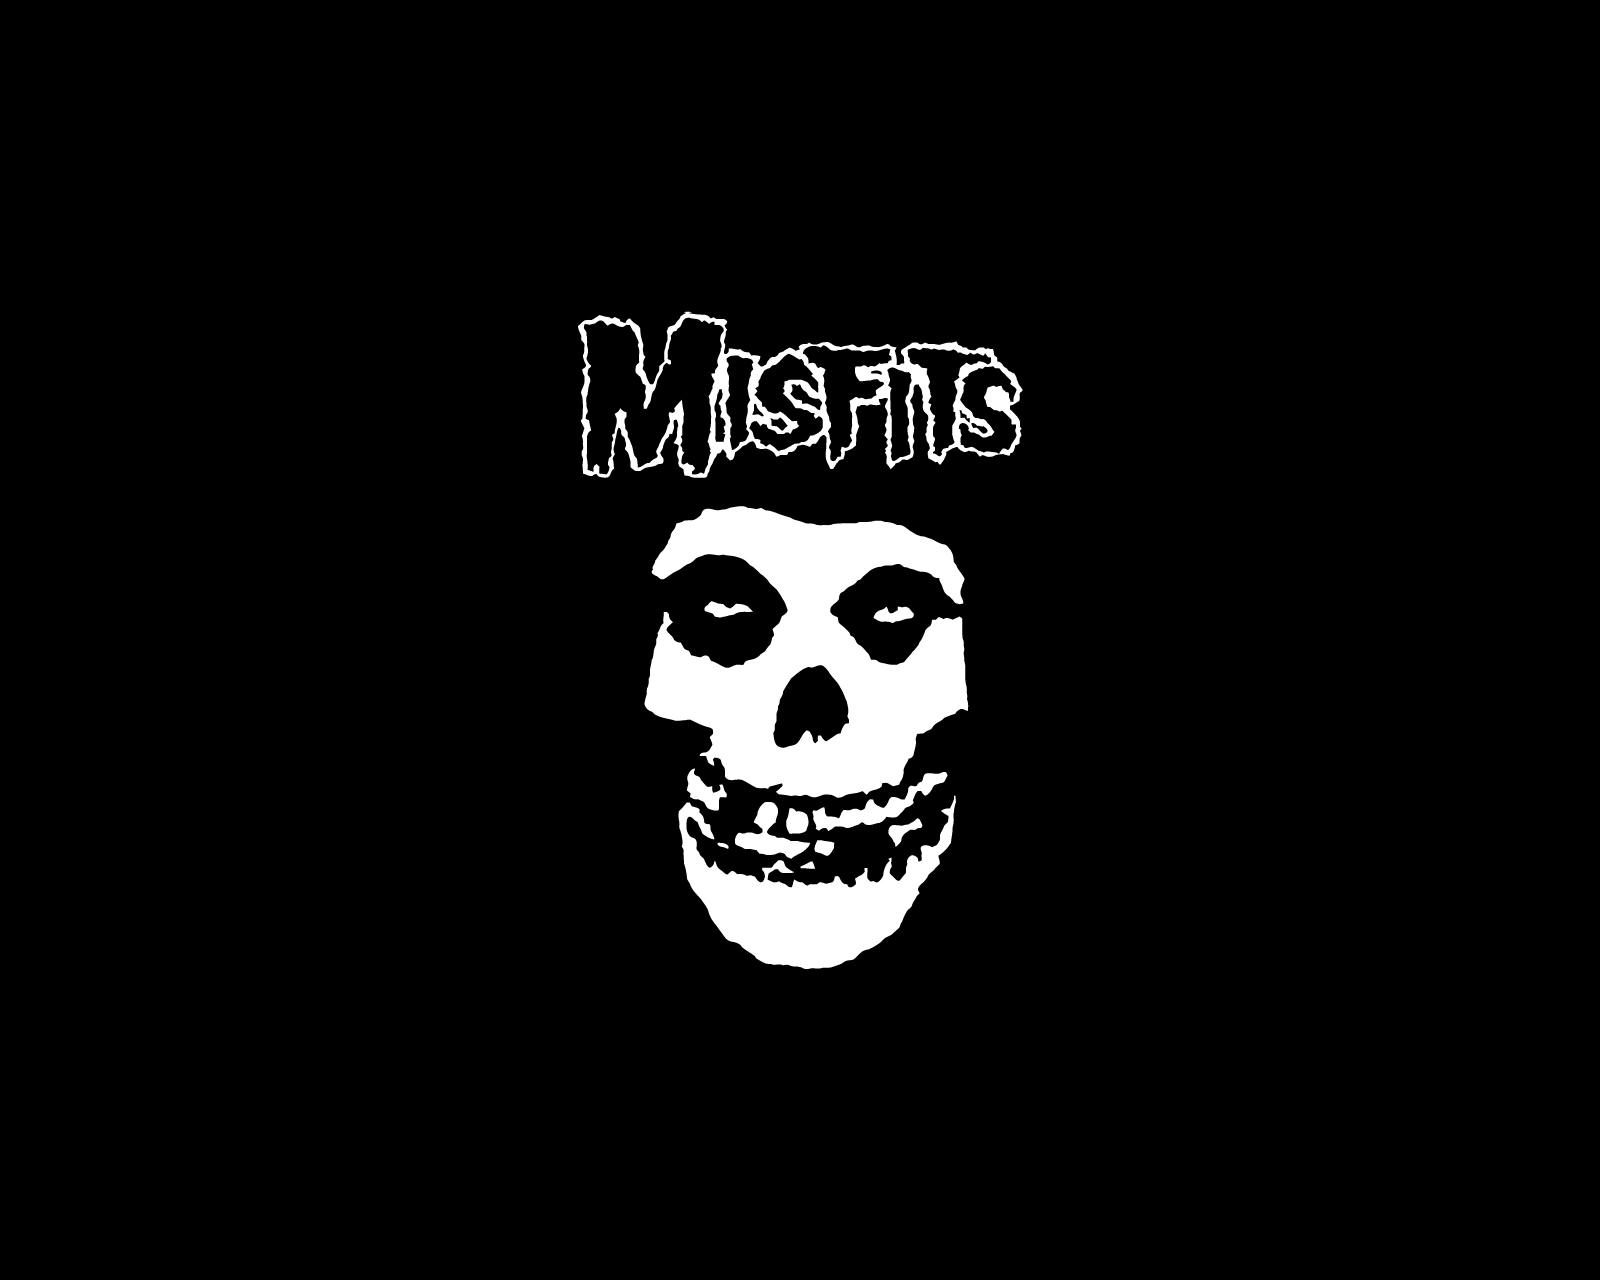 Misfits Logo And Wallpaper Band Logos Rock Metal Bands